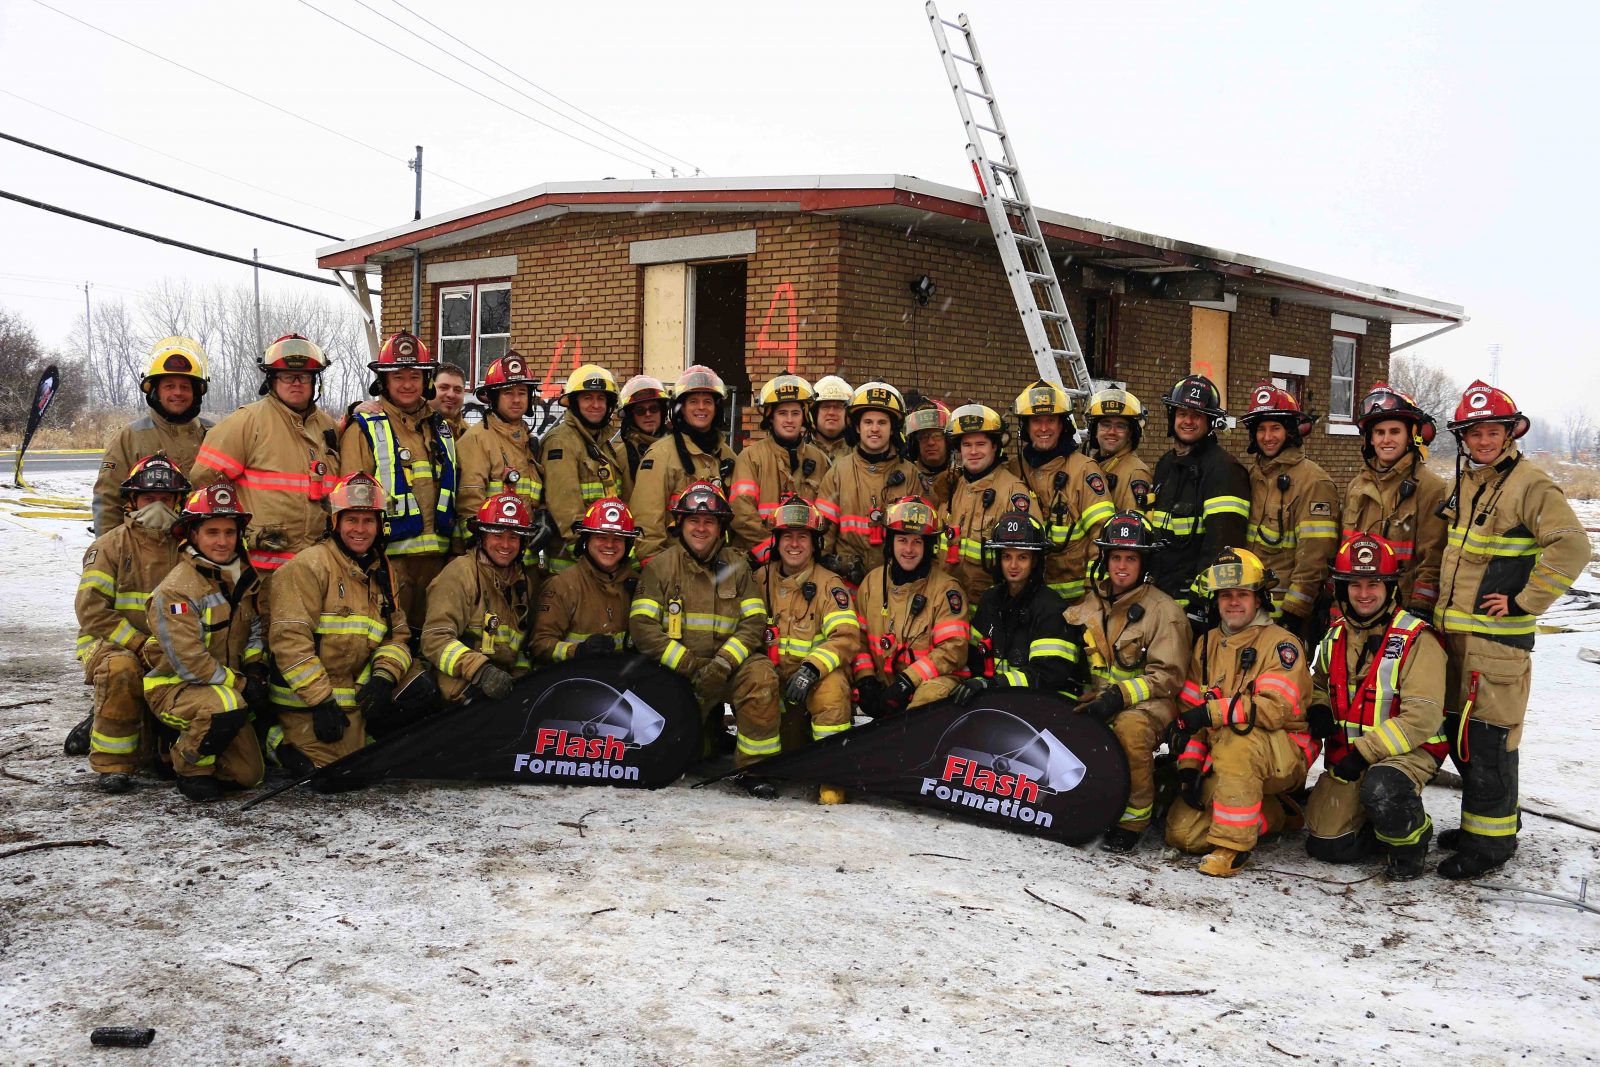 Les pompiers ont participé à un atelier unique de perfectionnement lors de mises de feu contrôlées de bâtiments